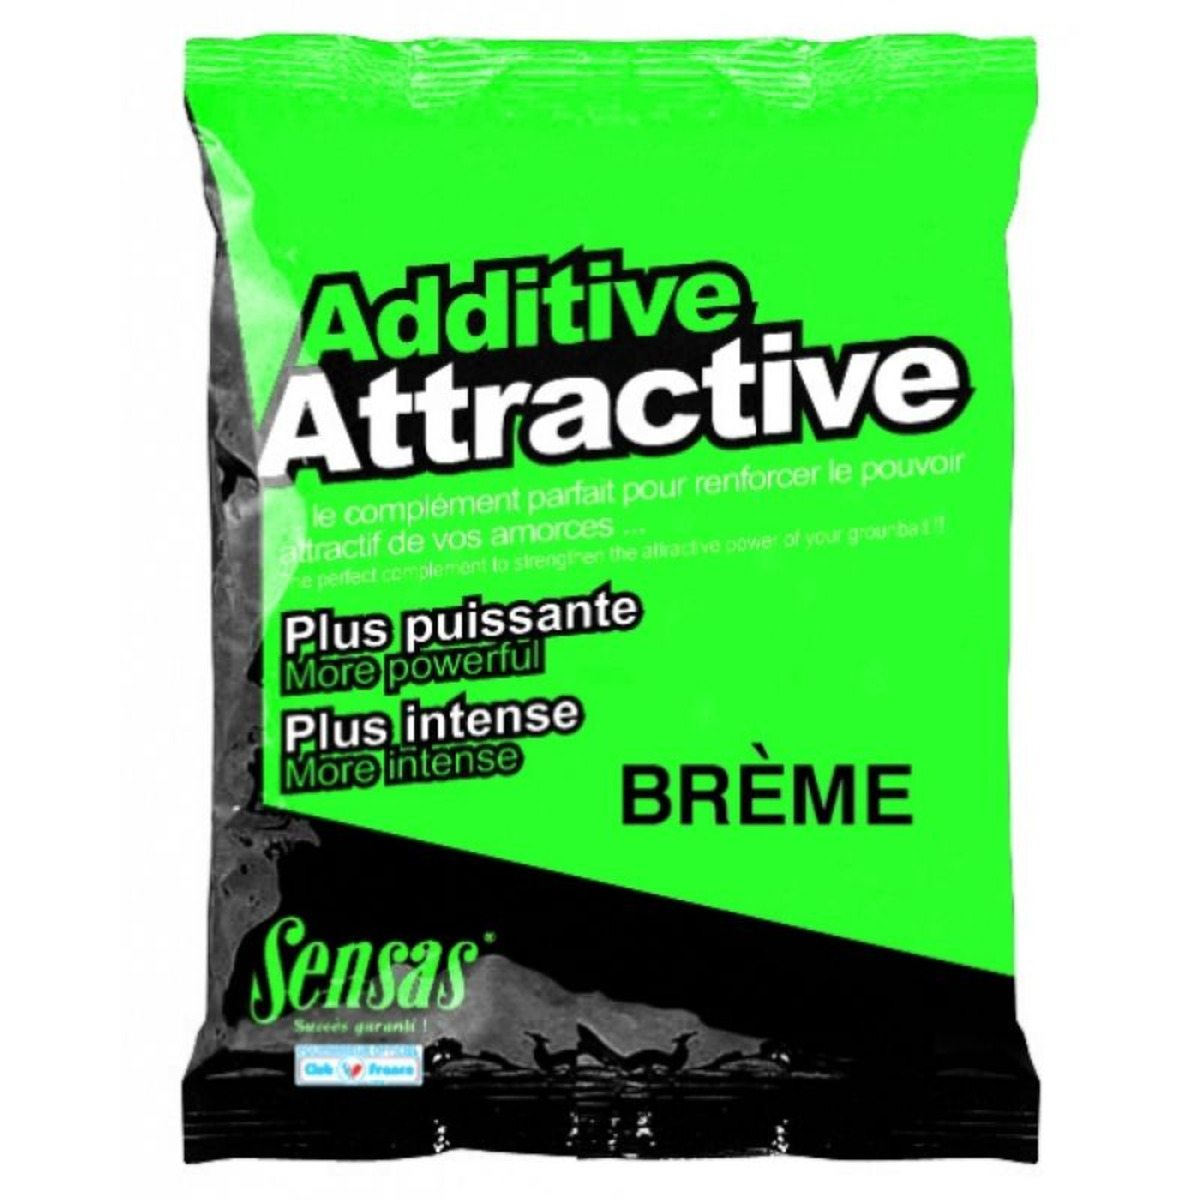 Sensas Attractive Additive - Breme - 250 g